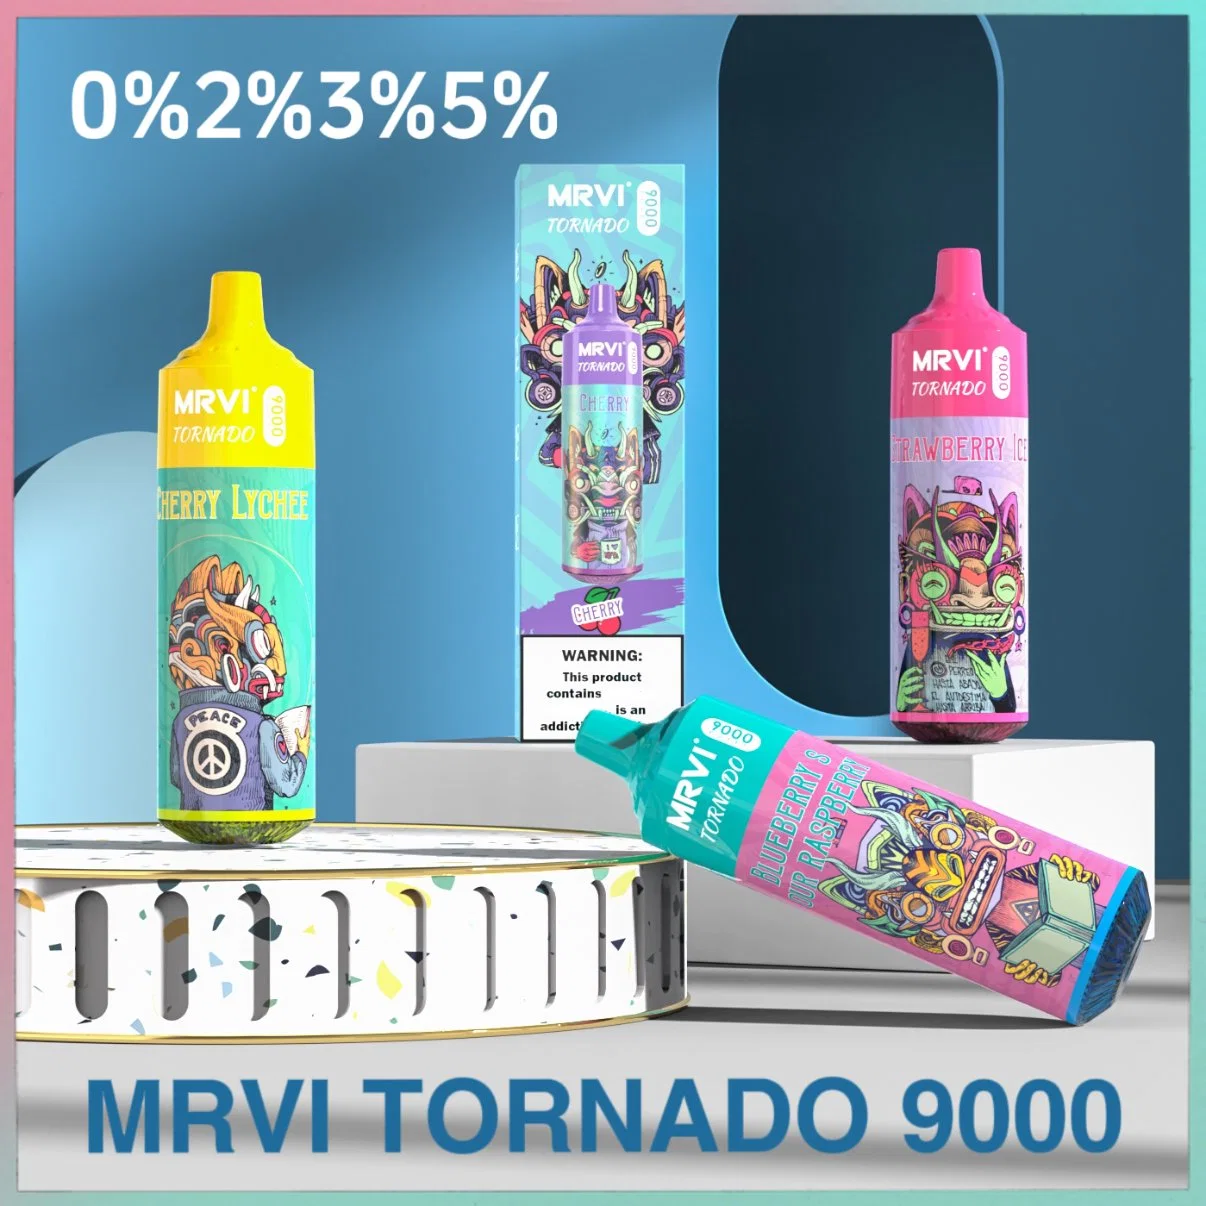 Original Mrvi Tornado 9000 Vape Pen jetable 0%2%3%5% RVB clignotant Conception de réservoir 850 mAh Type-C rechargeable jetable Randm Tornado 7000